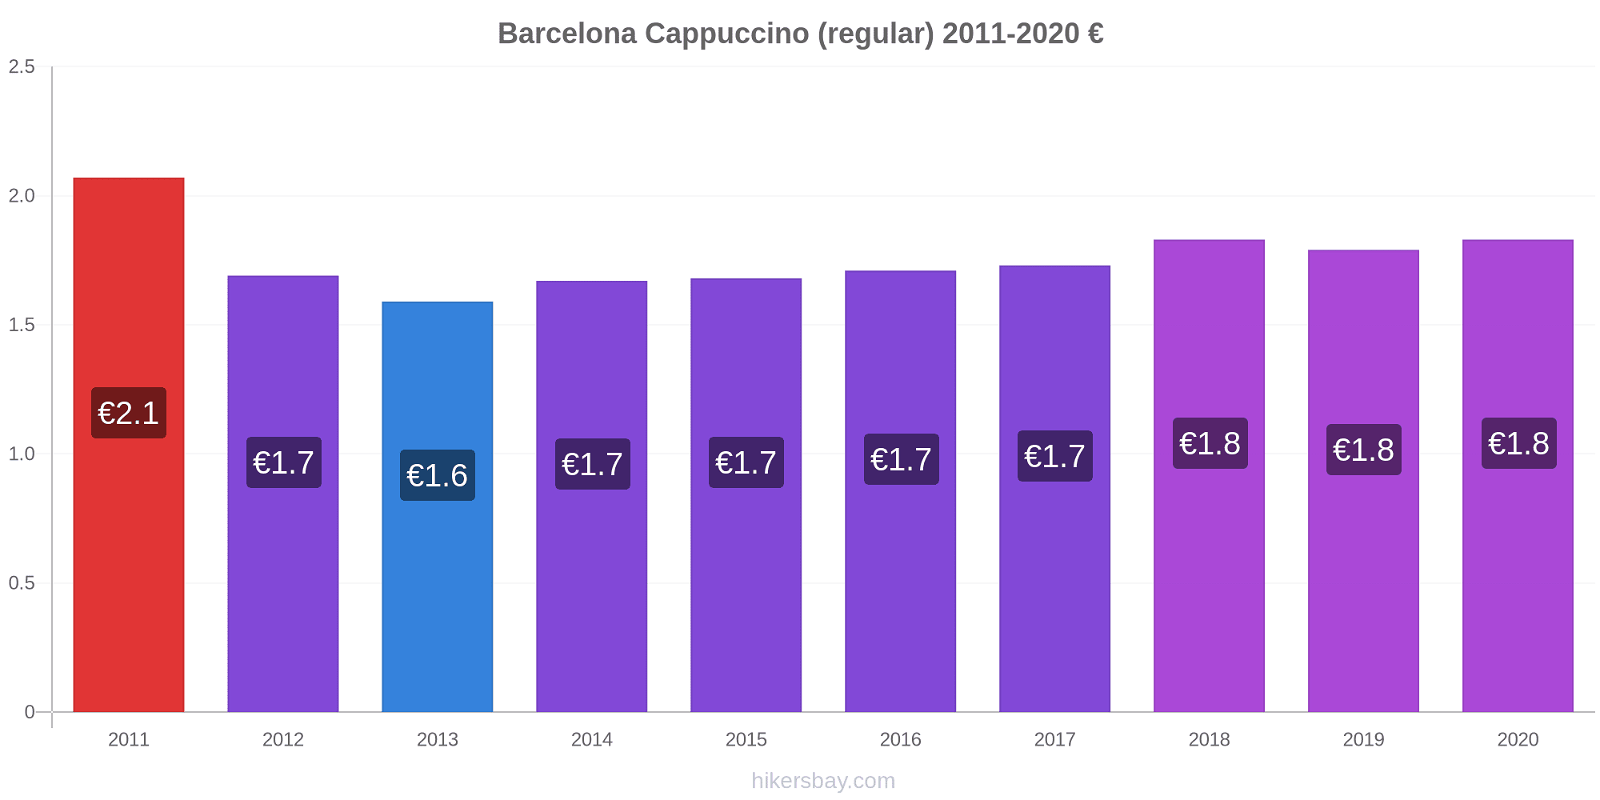 Barcelona price changes Cappuccino (regular) hikersbay.com